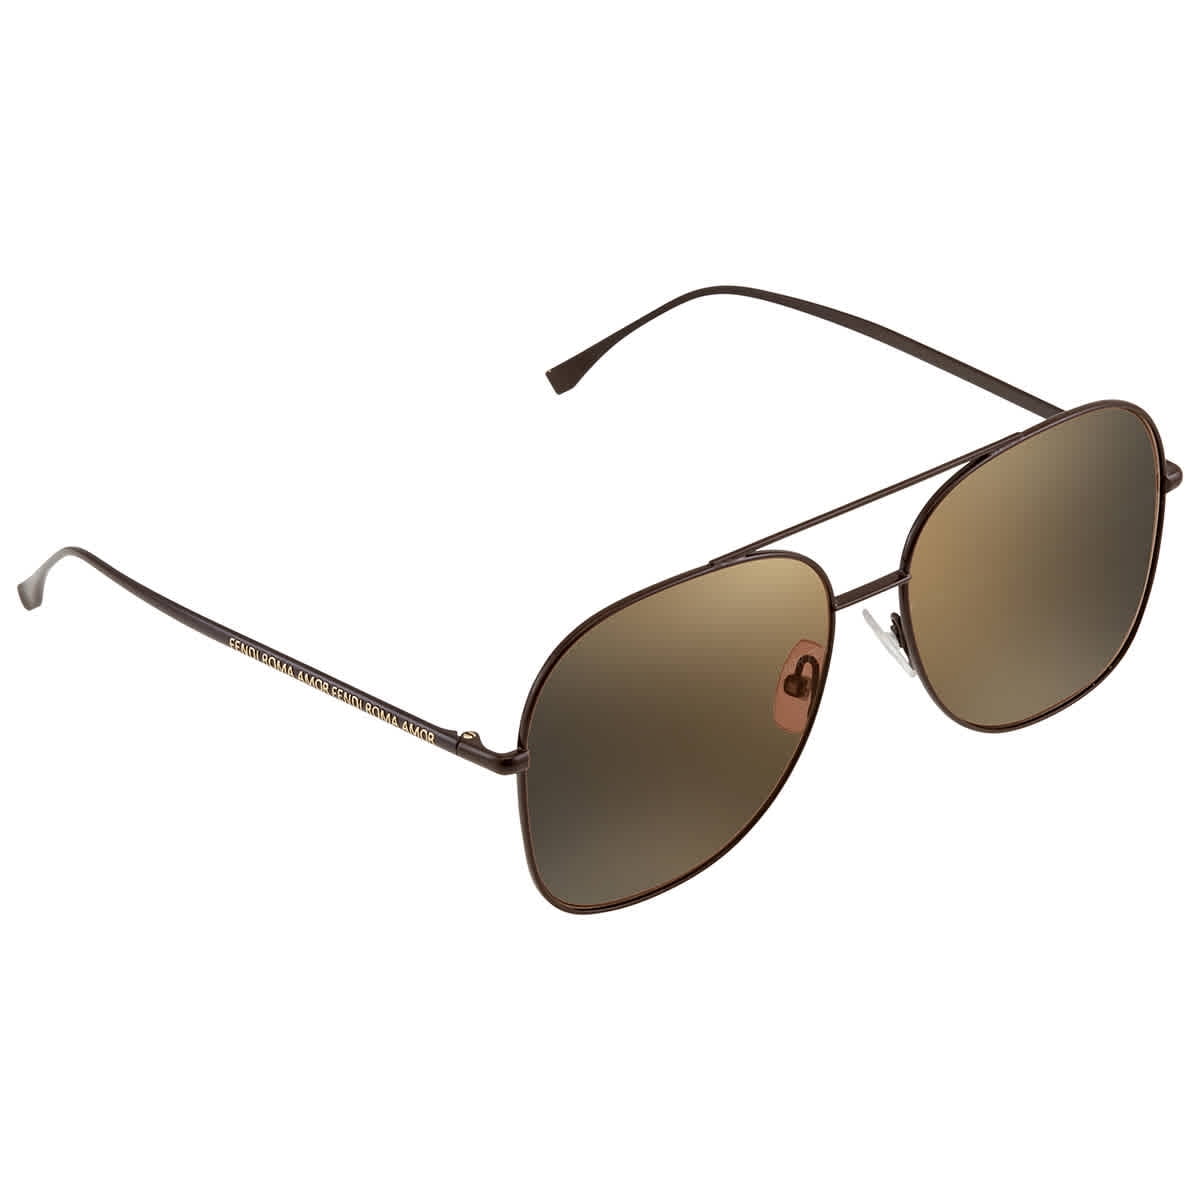 Fendi Gold Decor Ladies Sunglasses FF 0375/G/S 009Q 57